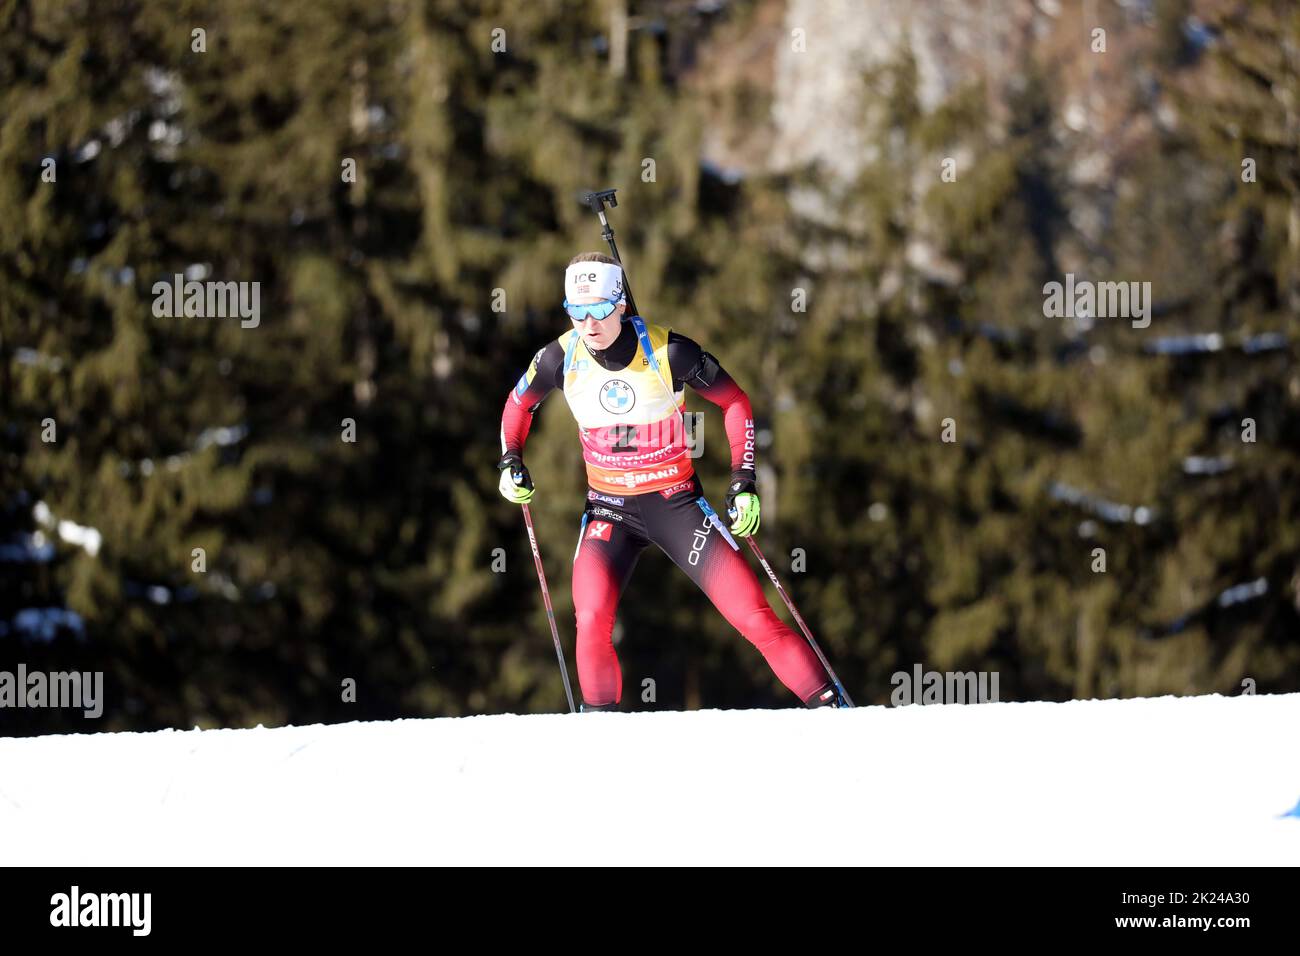 Marte Olsbu Roeiseland (Norwegen / Norway) auf dem Weg zum Sieg beim IBU Biathlon Weltcup Pursuit 10 km Frauen Ruhpolding 2022 Stock Photo